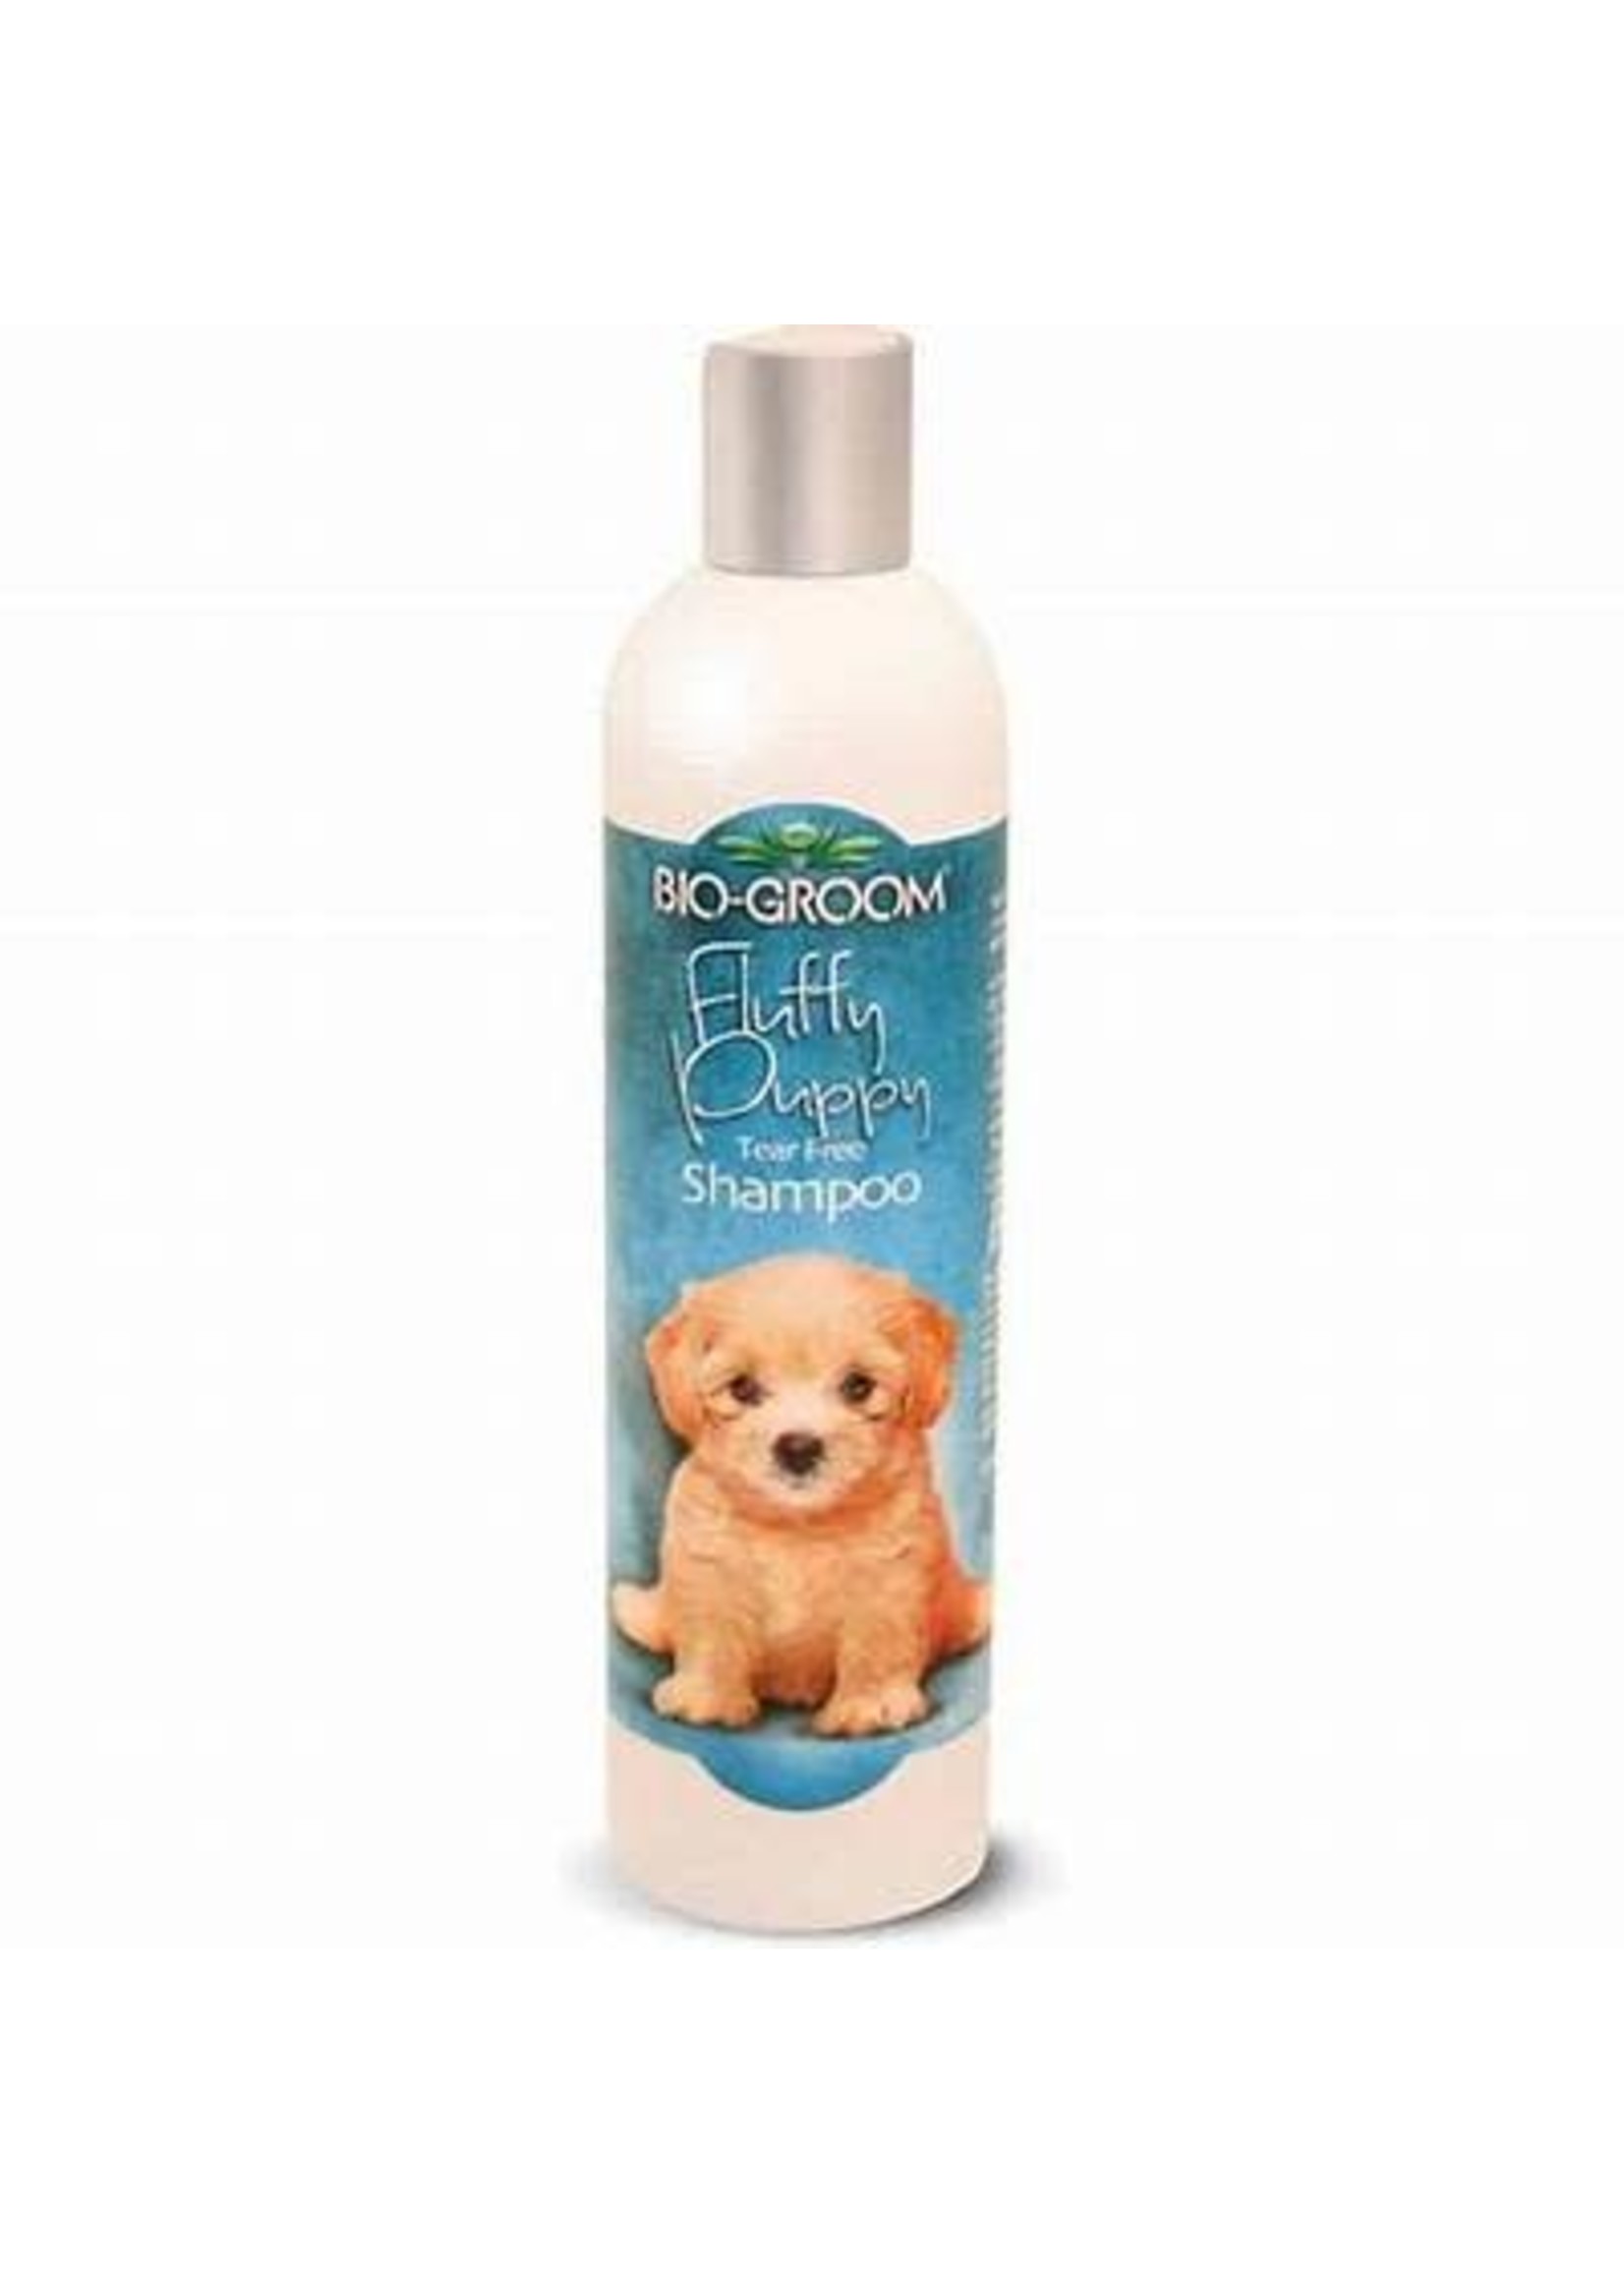 Bio Groom *Bio Groom Fluffy Puppy Shampoo-12oz*